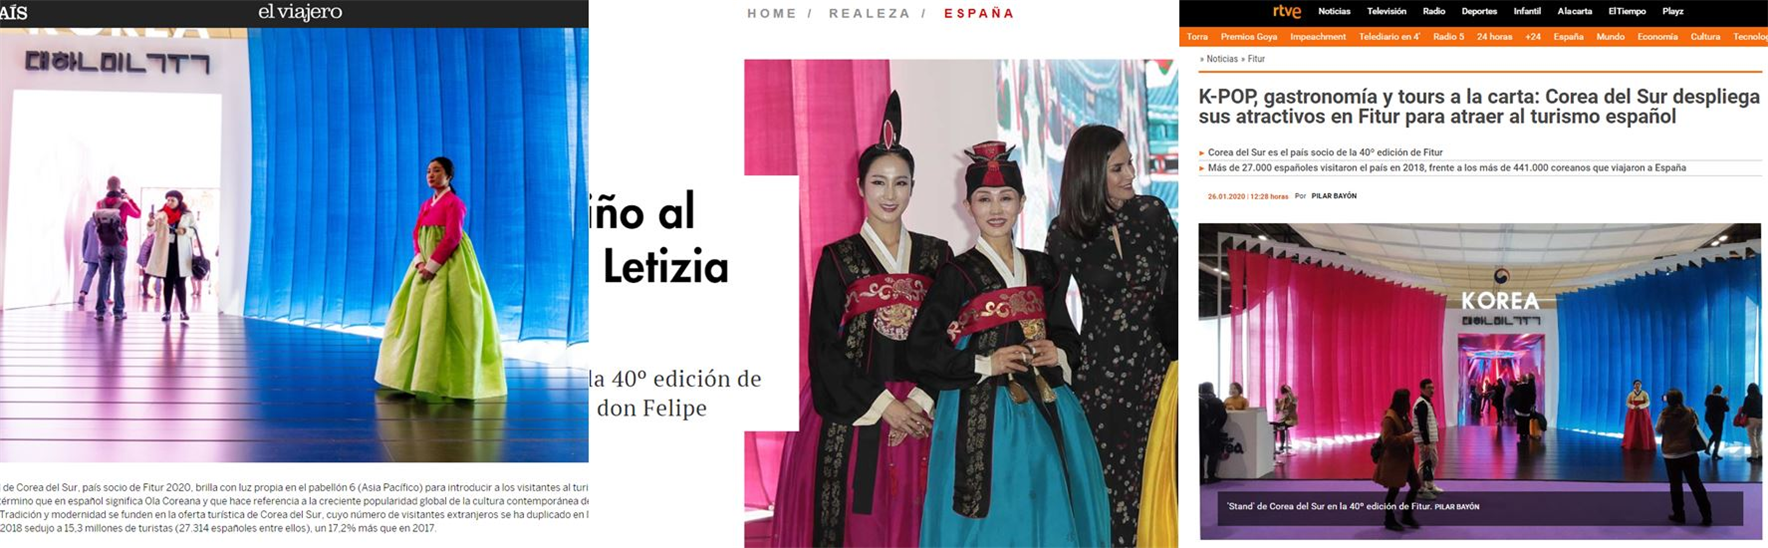 <한국이 주빈국으로 초대된 이번 박람회 개최 소식은 스페인 유력 언론을 통해서도 전해졌다 – 출처 : EL PAIS, HOLA, RTVE>